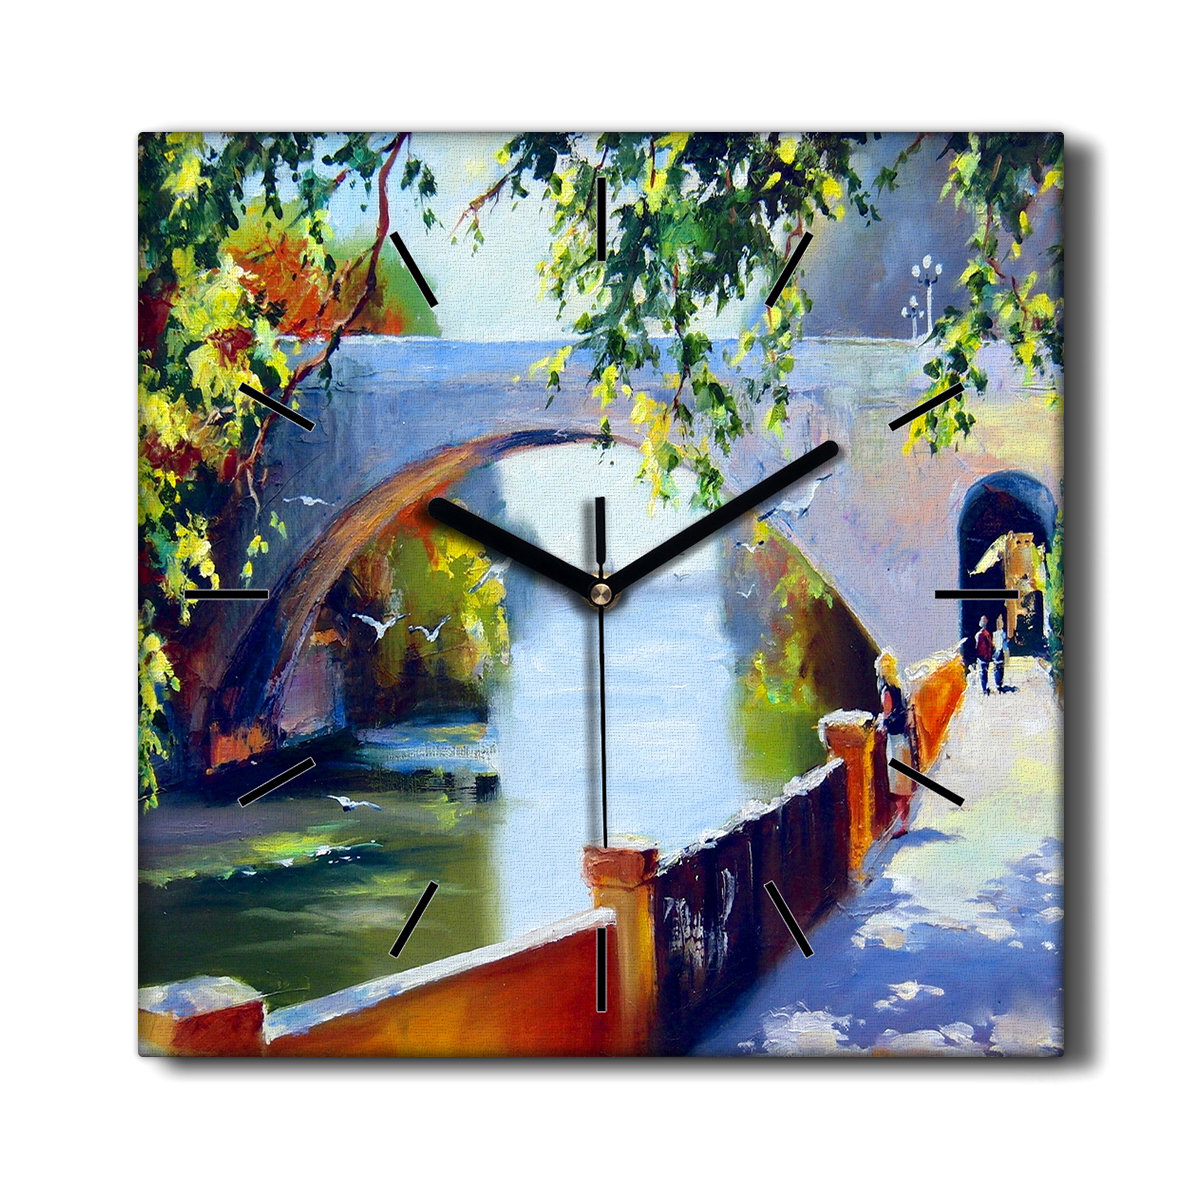 Kuchenny zegar na płótnie Drzewa rzeka most 30x30, Coloray